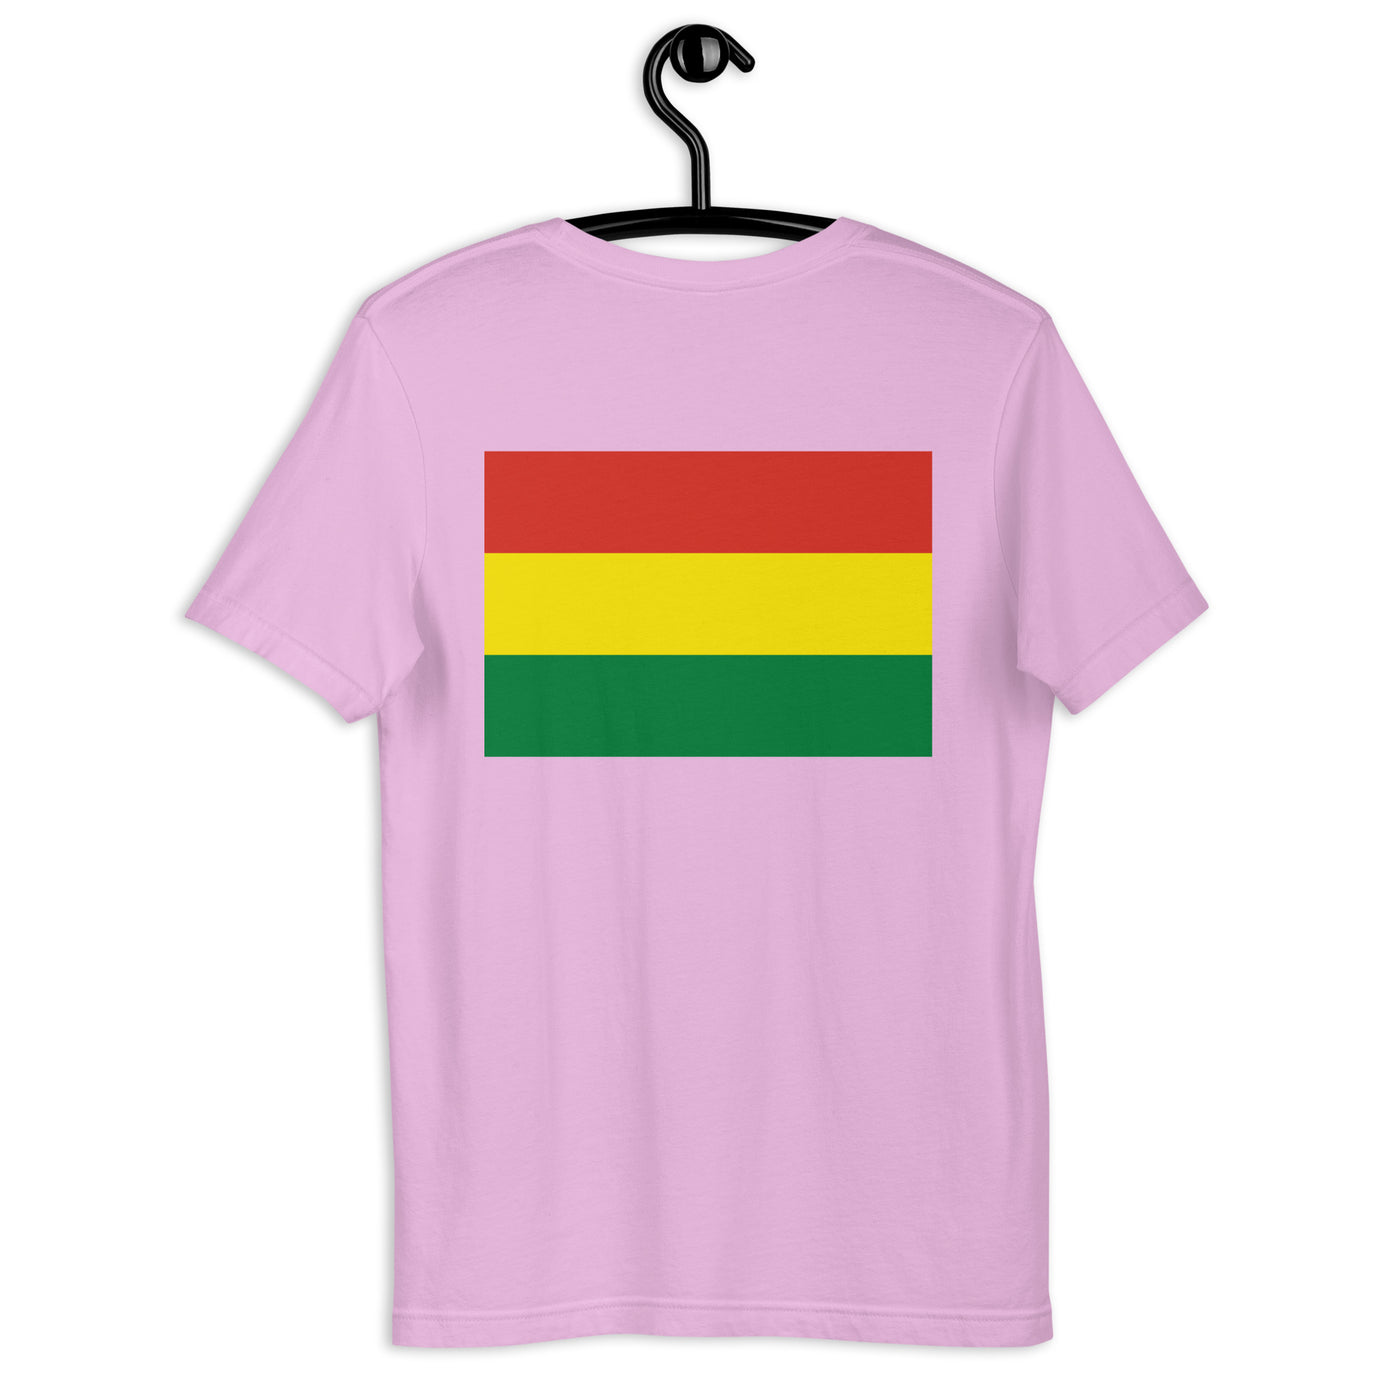 Bolivia POR VIDA (Black Text) Unisex t-shirt